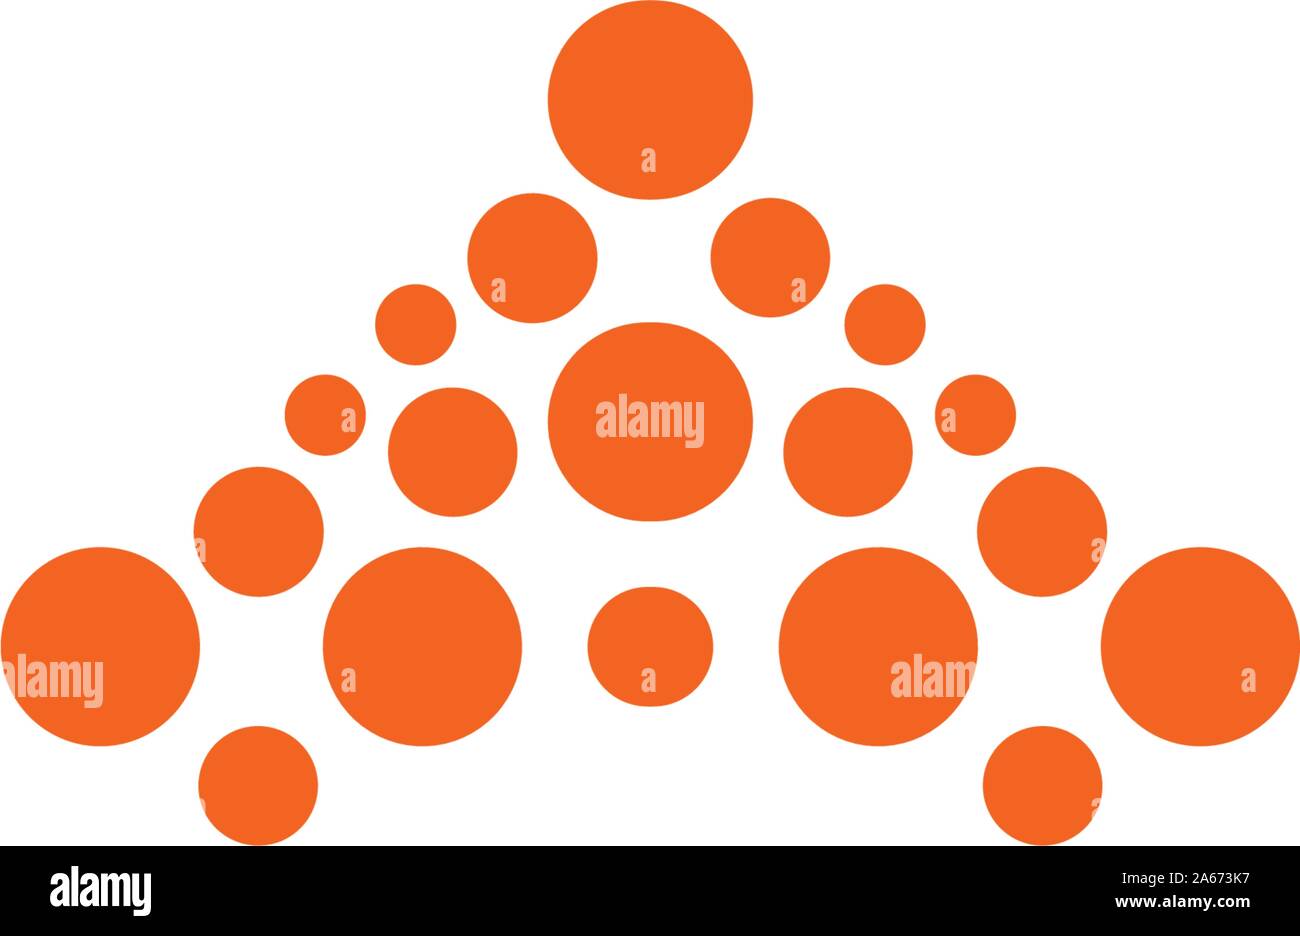 Premium abstrakte logo Vorlage. Vektor Kreise formen. Moderne orange Firmenlogo. Vektor Emblem auf weißem Hintergrund. Stock Vektor